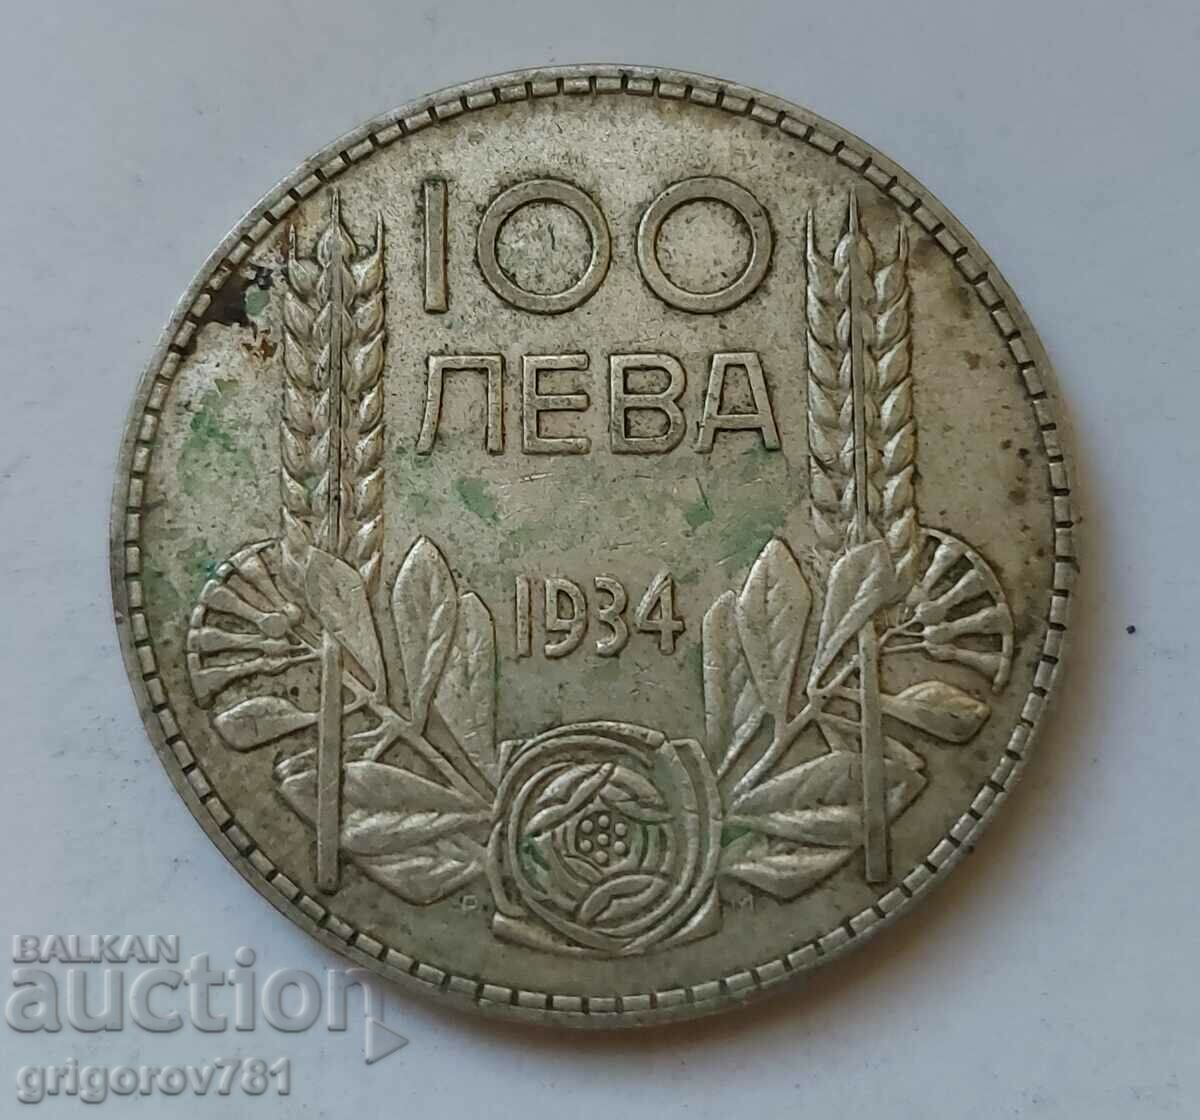 100 leva silver Bulgaria 1934 - silver coin #132